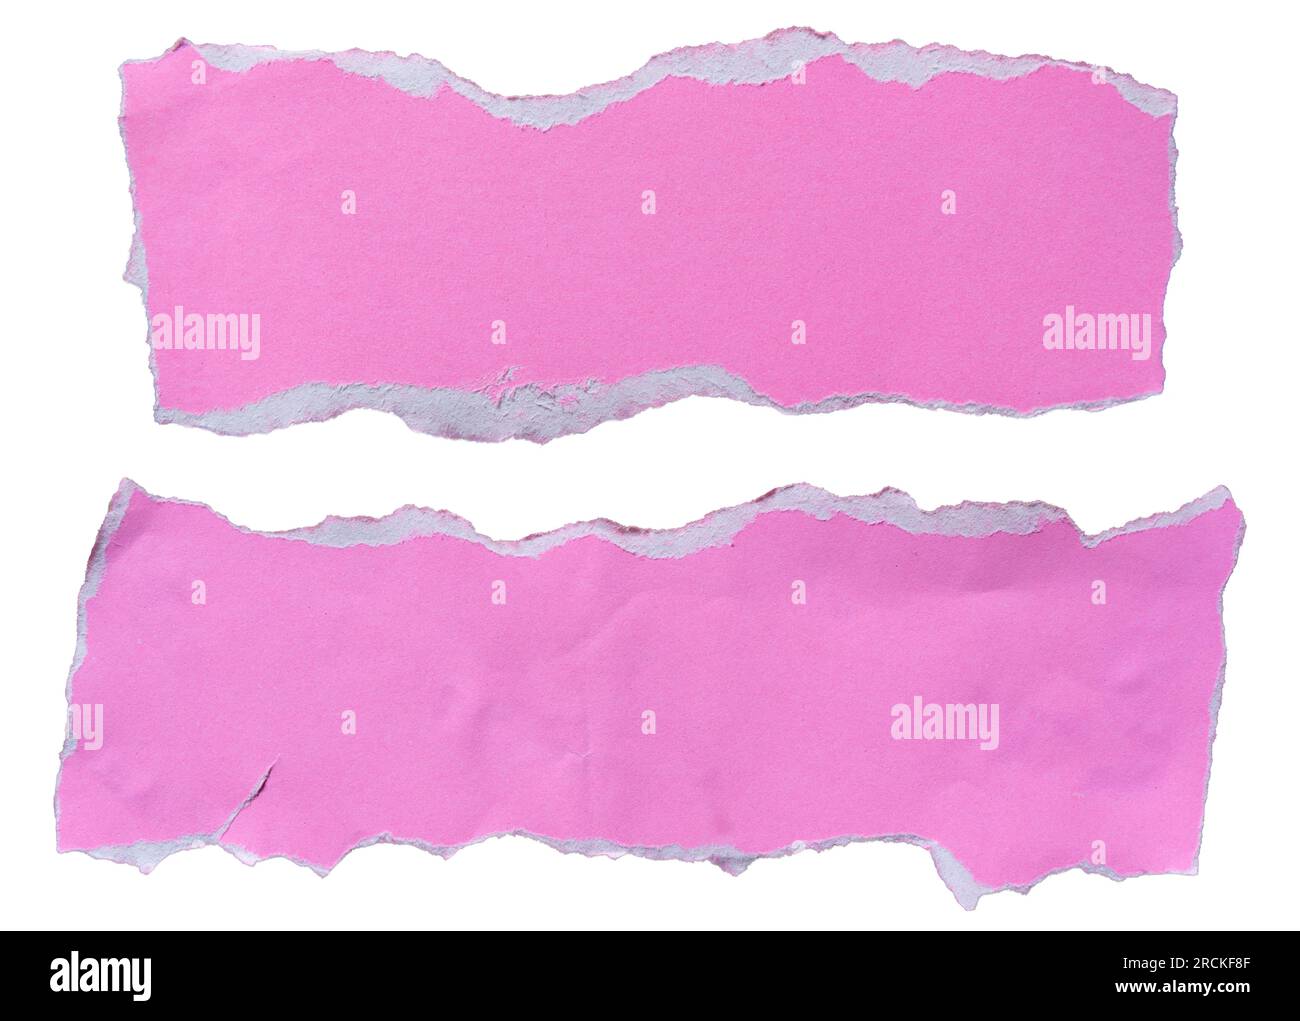 due pezzi di carta rosa strappata da utilizzare come casella di testo su sfondo bianco con tracciato di ritaglio Foto Stock